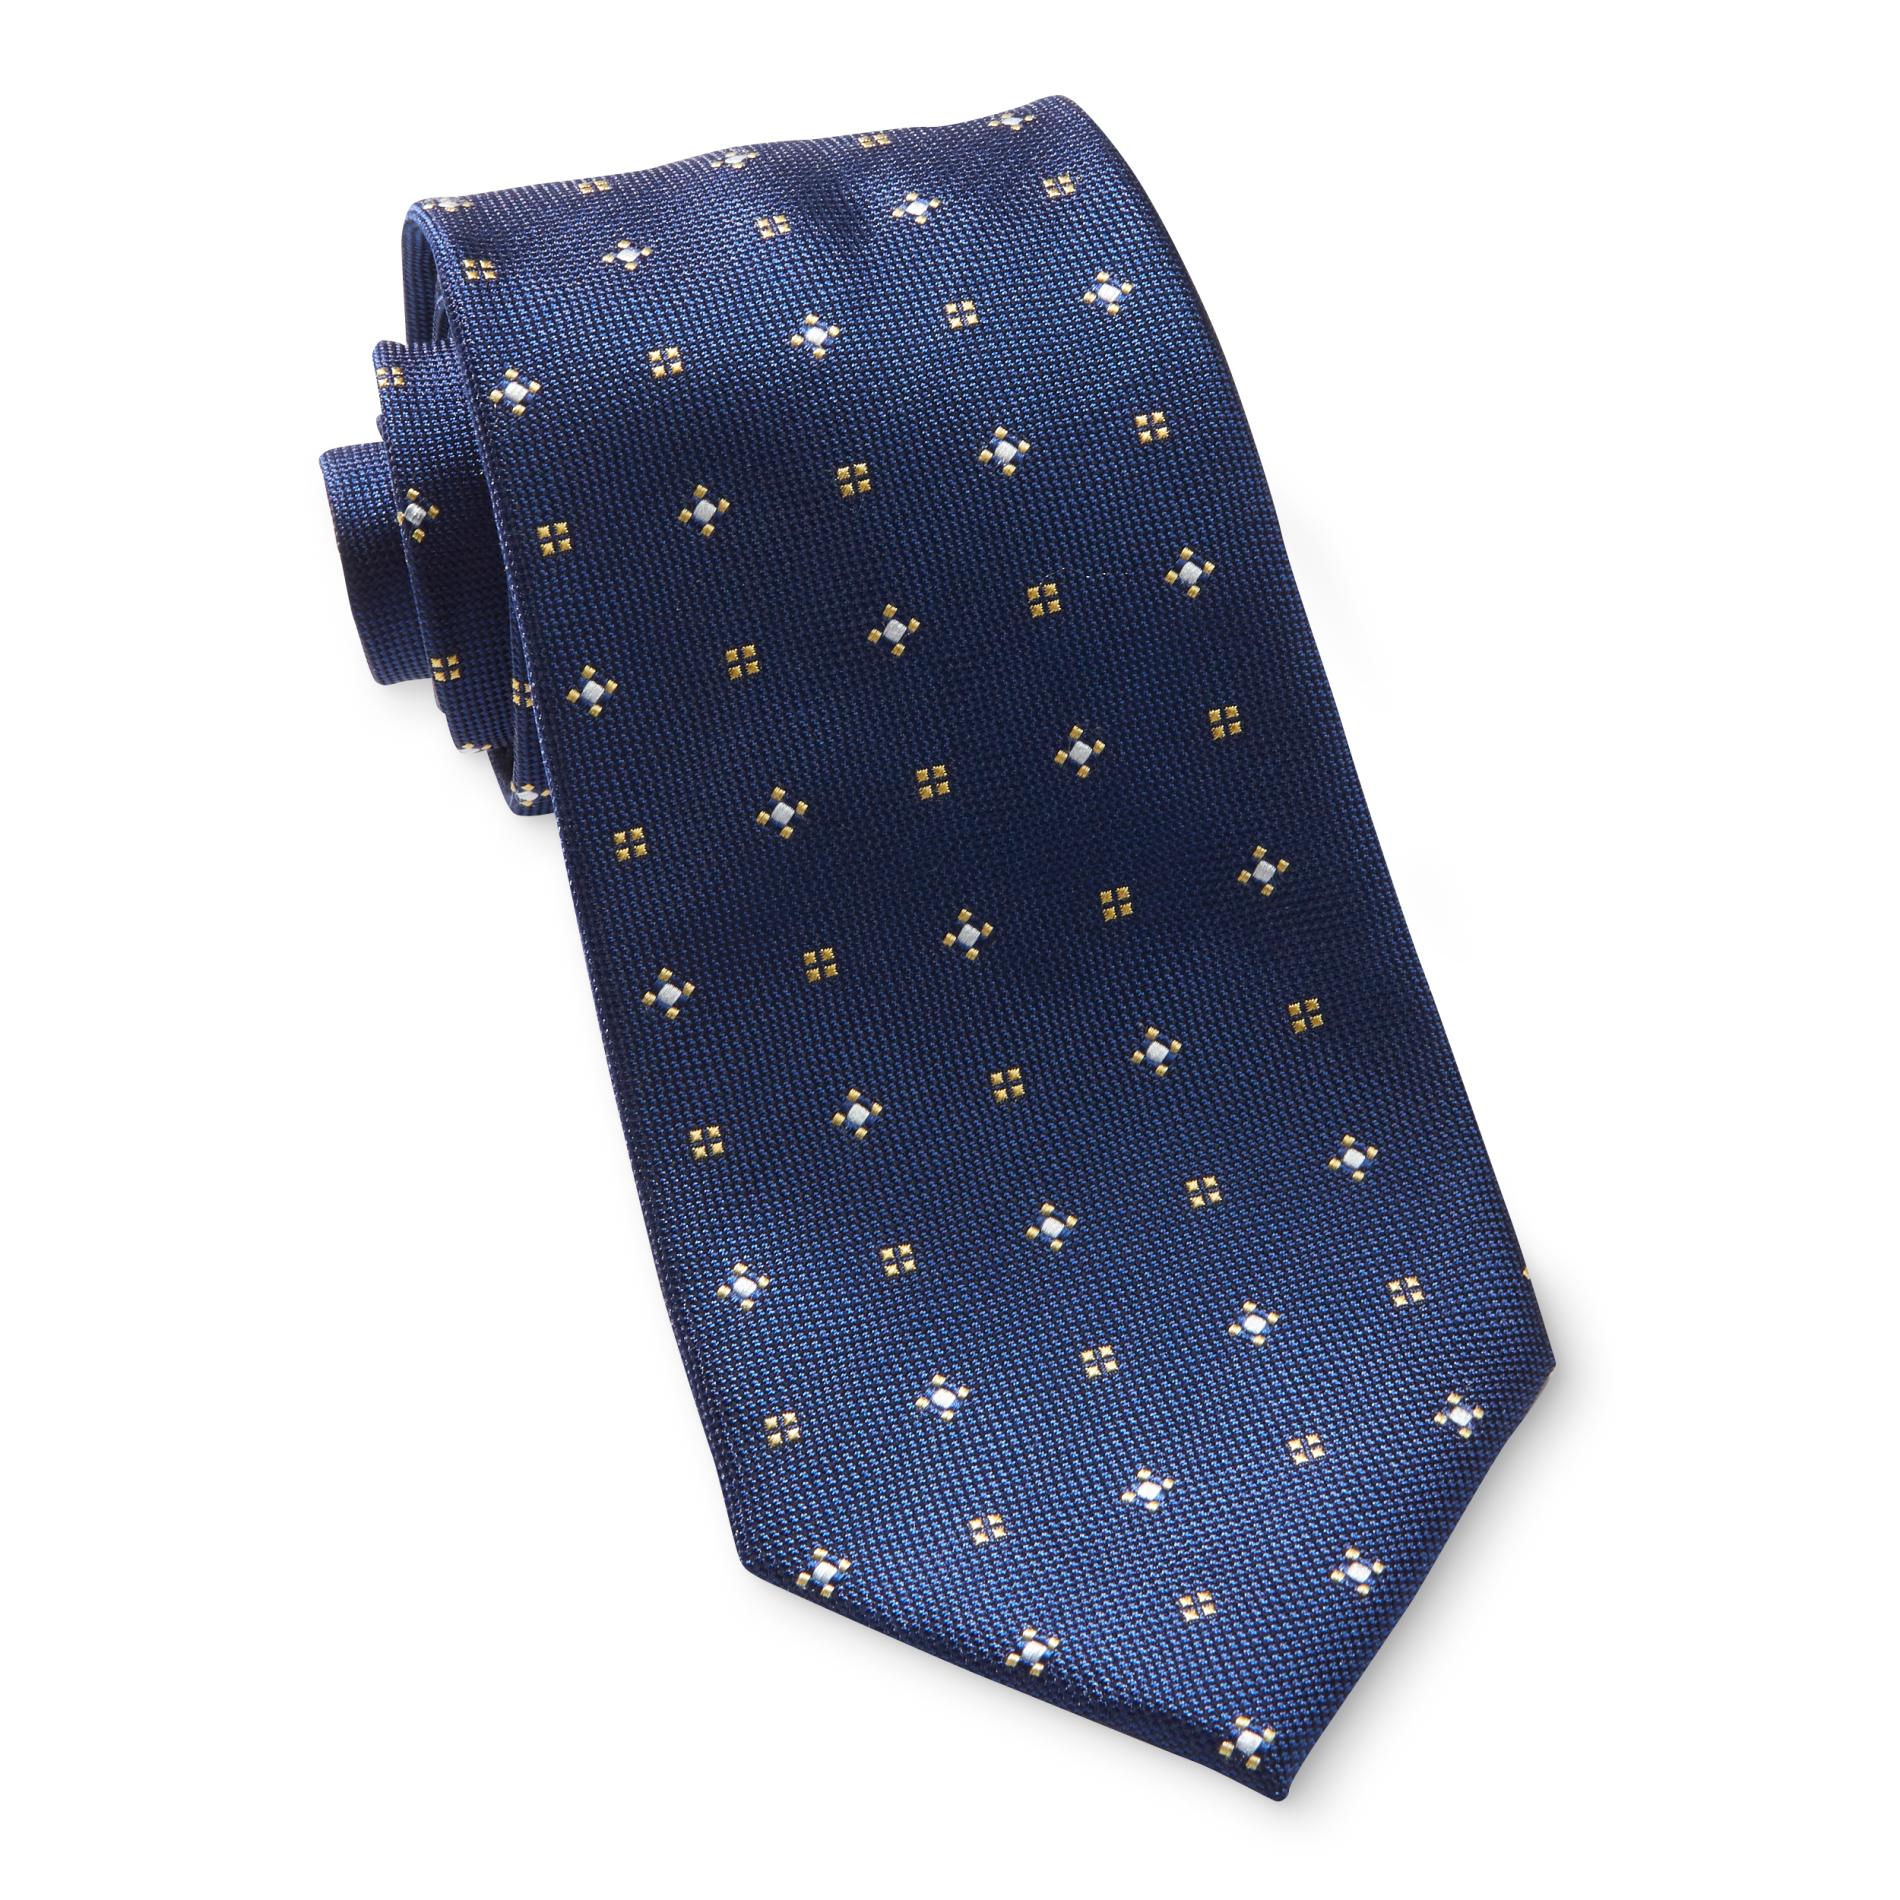 Dockers Men's Necktie - Geometric Print